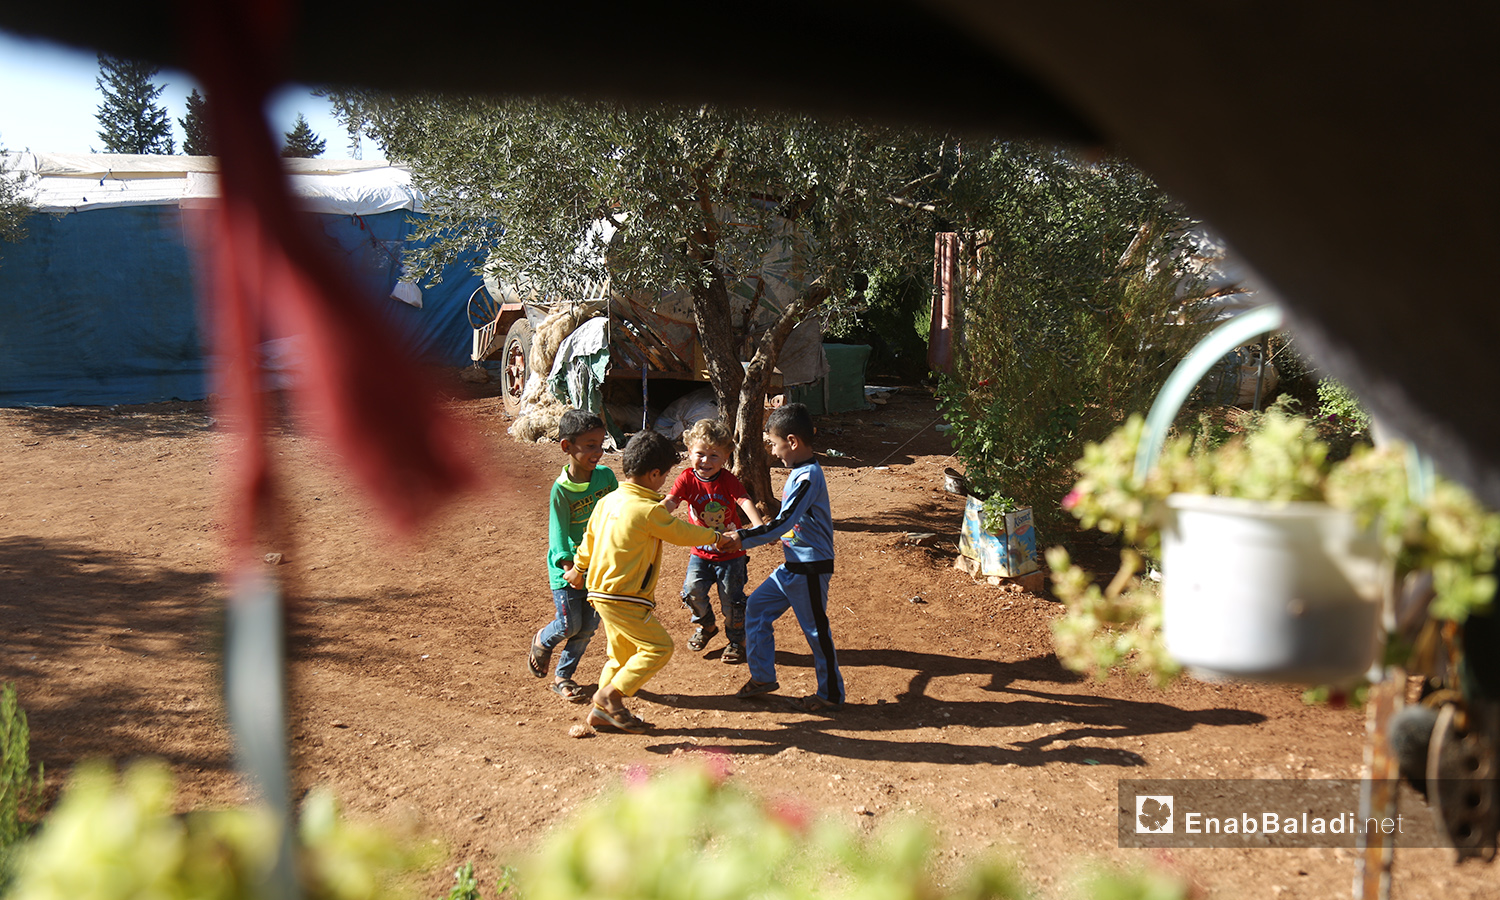 يلعب الأطفال خارج خيامهم بانتظار تجهيز الطعام  - تشرين الأول 2020 (عنب بلدي/ يوسف غريبي)